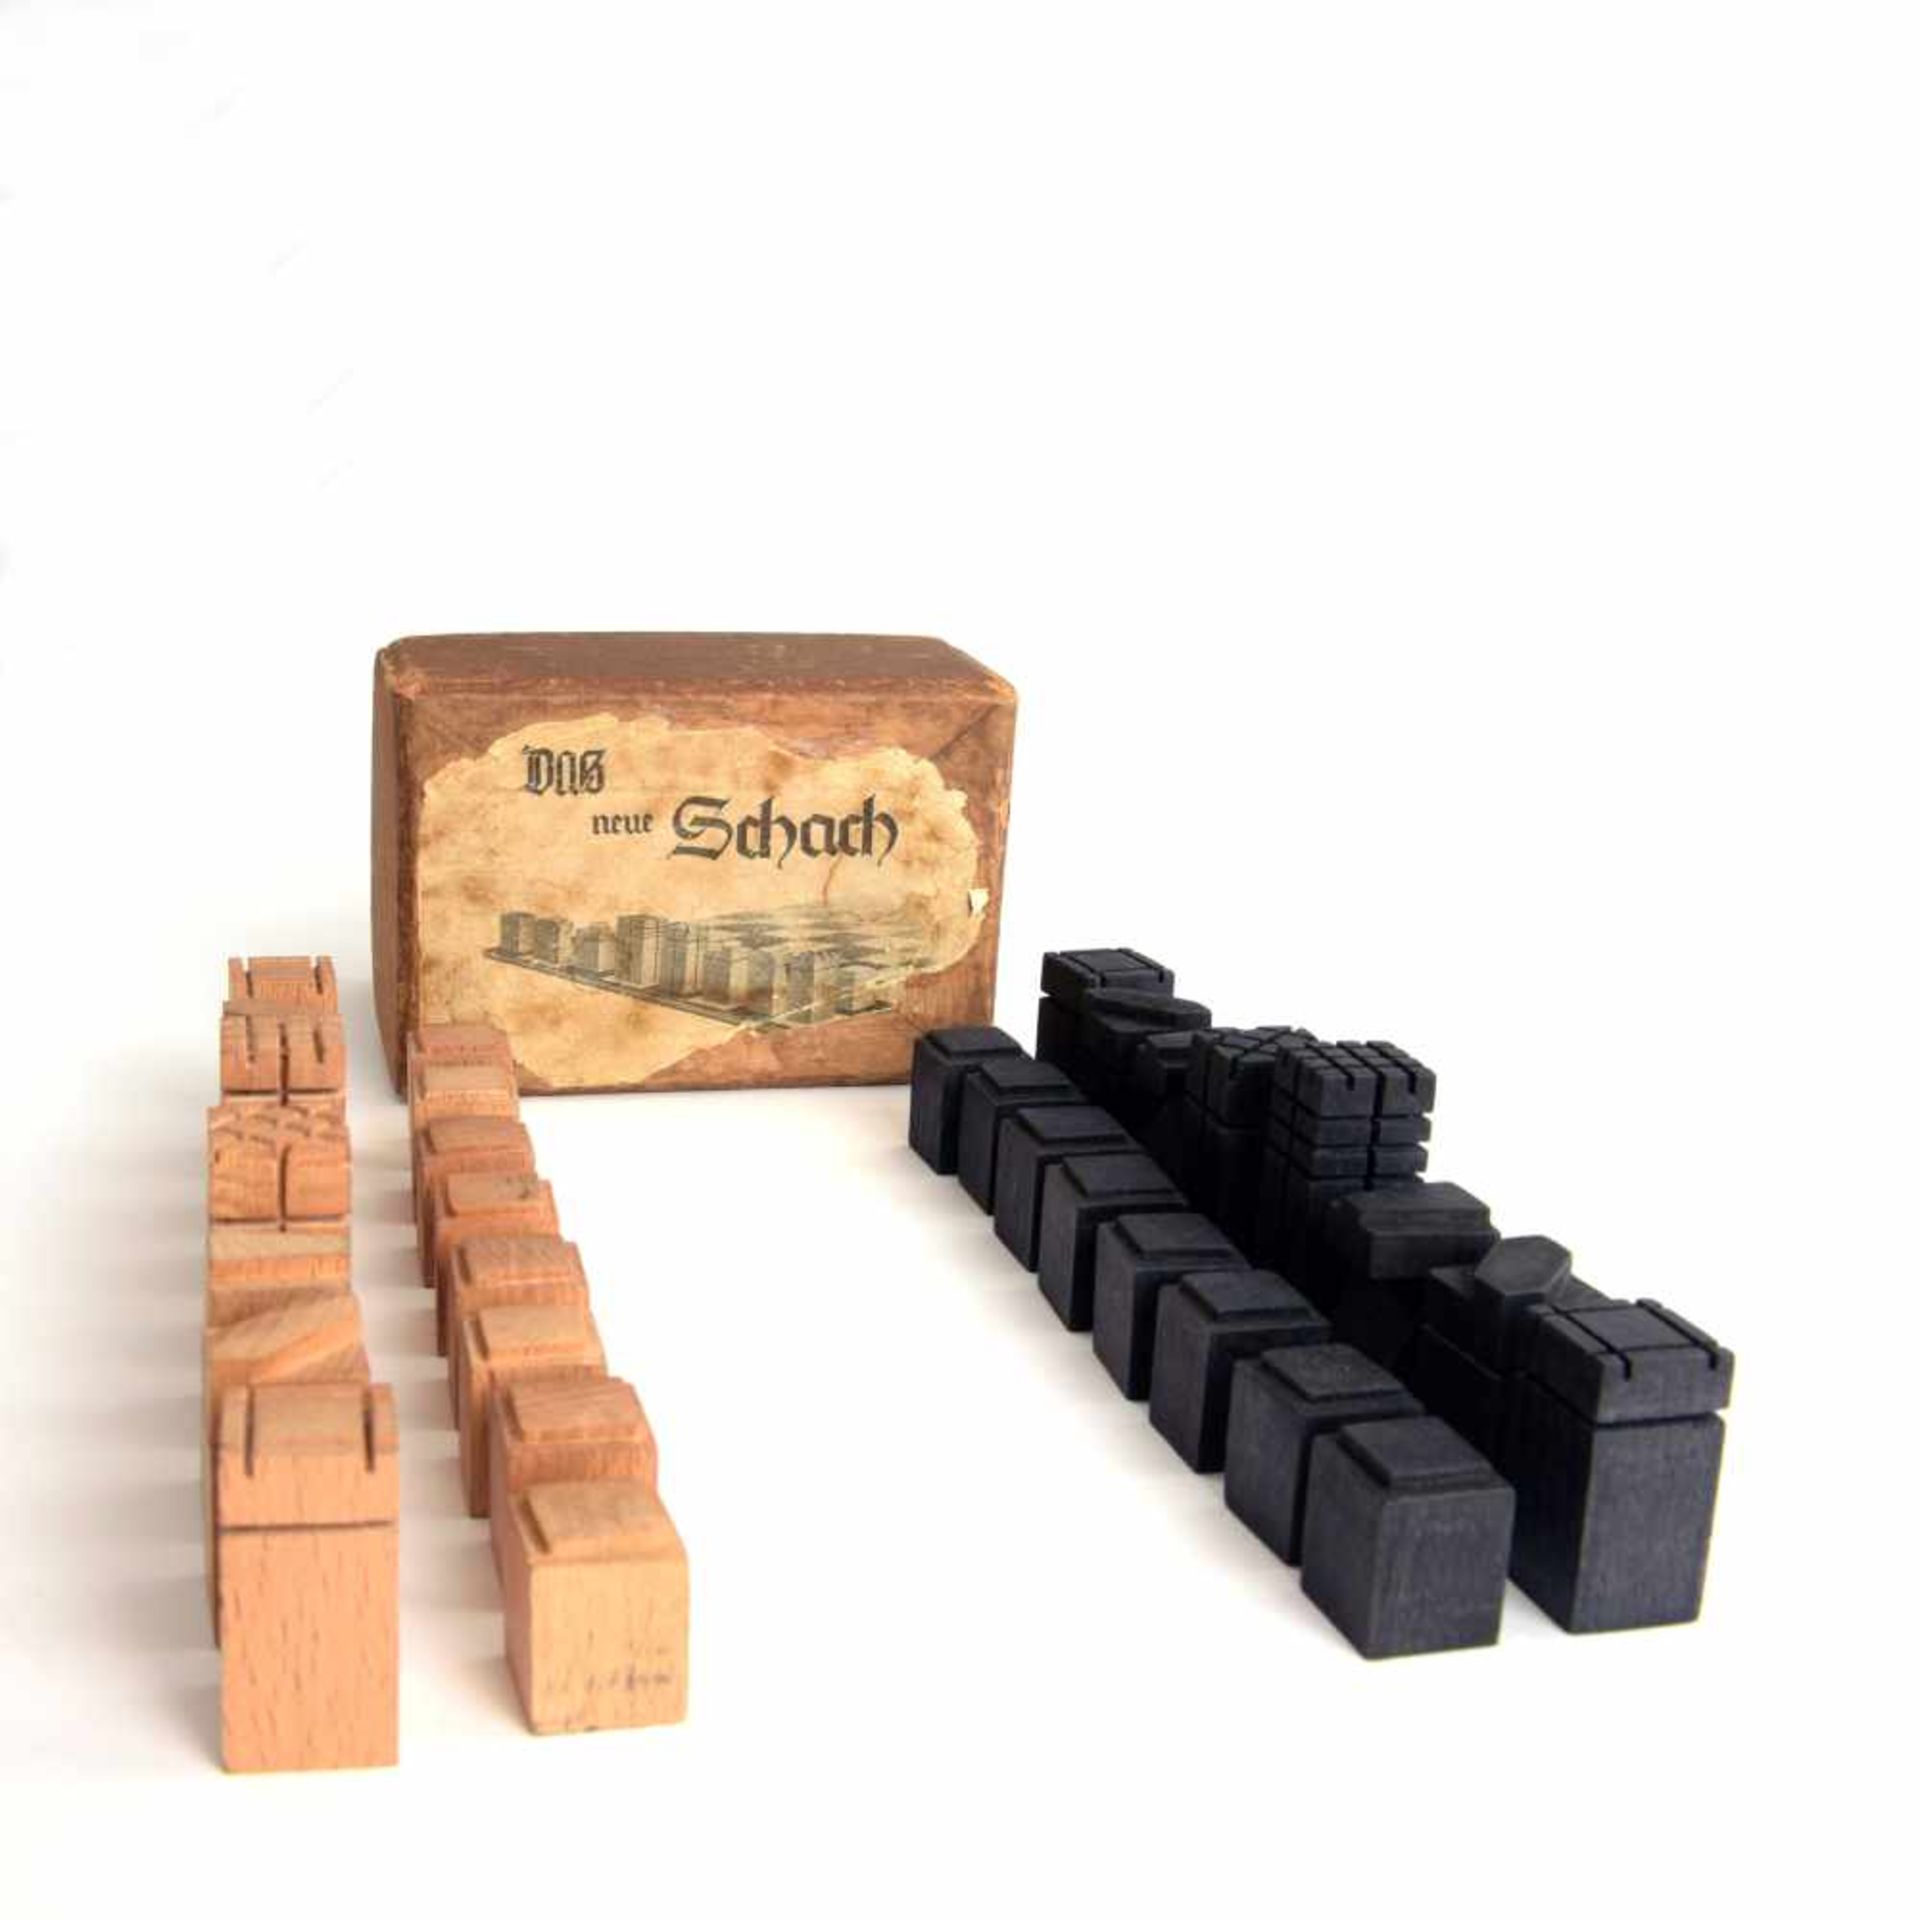 Deutschland. Schachspiel 'Das neue Schach', um 1925 H. 2,5-5,4 cm. Holz, natur bzw. schwarz gebeizt. - Image 7 of 9